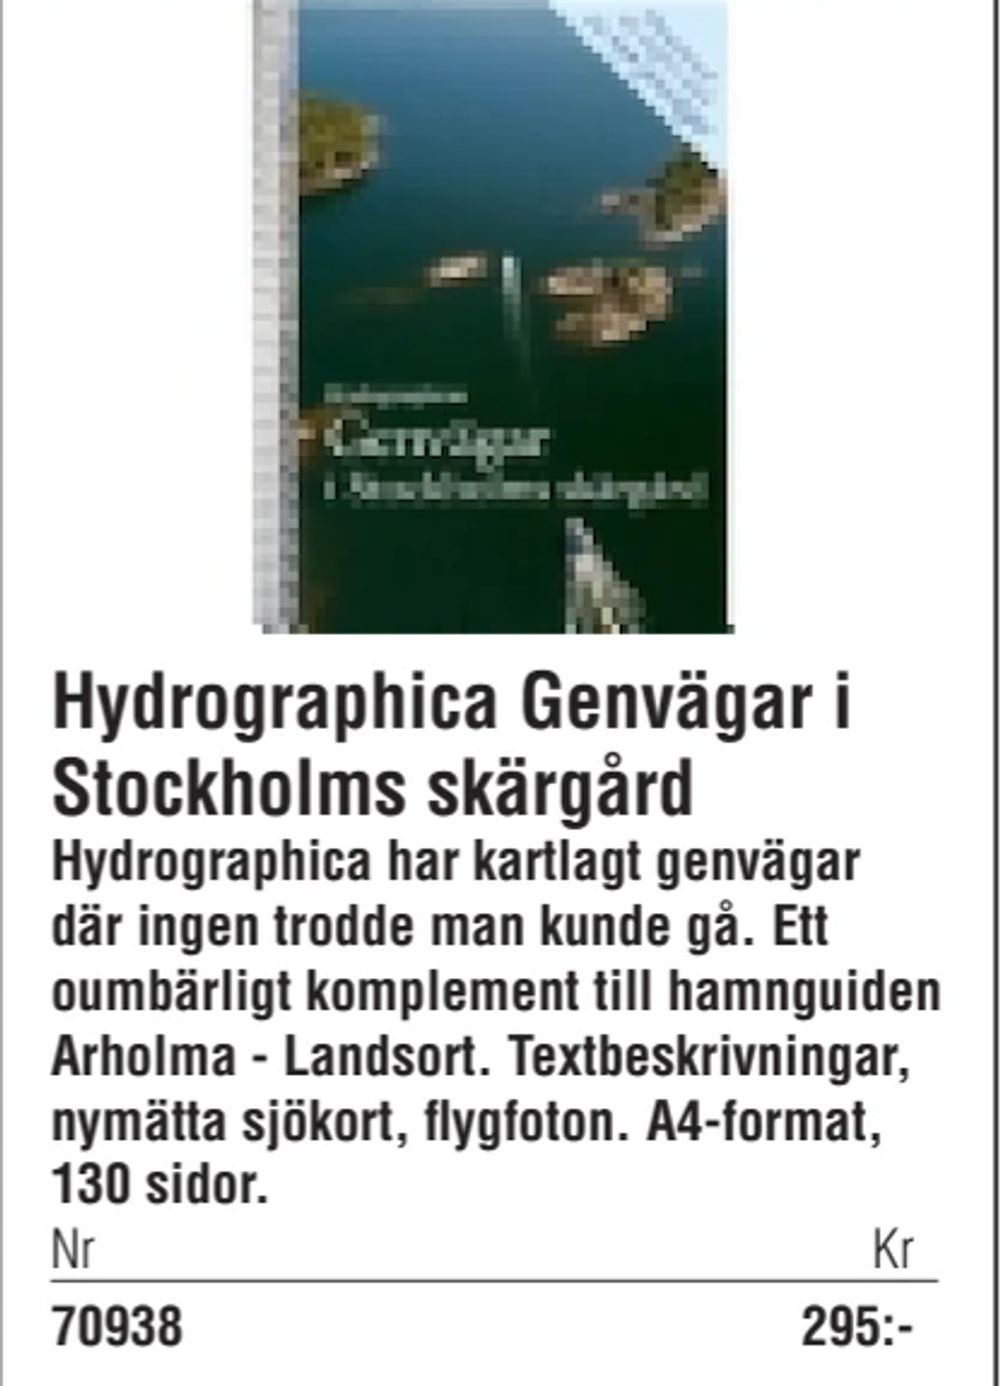 Erbjudanden på Hydrographica Genvägar i Stockholms skärgård från Erlandsons Brygga för 295 kr